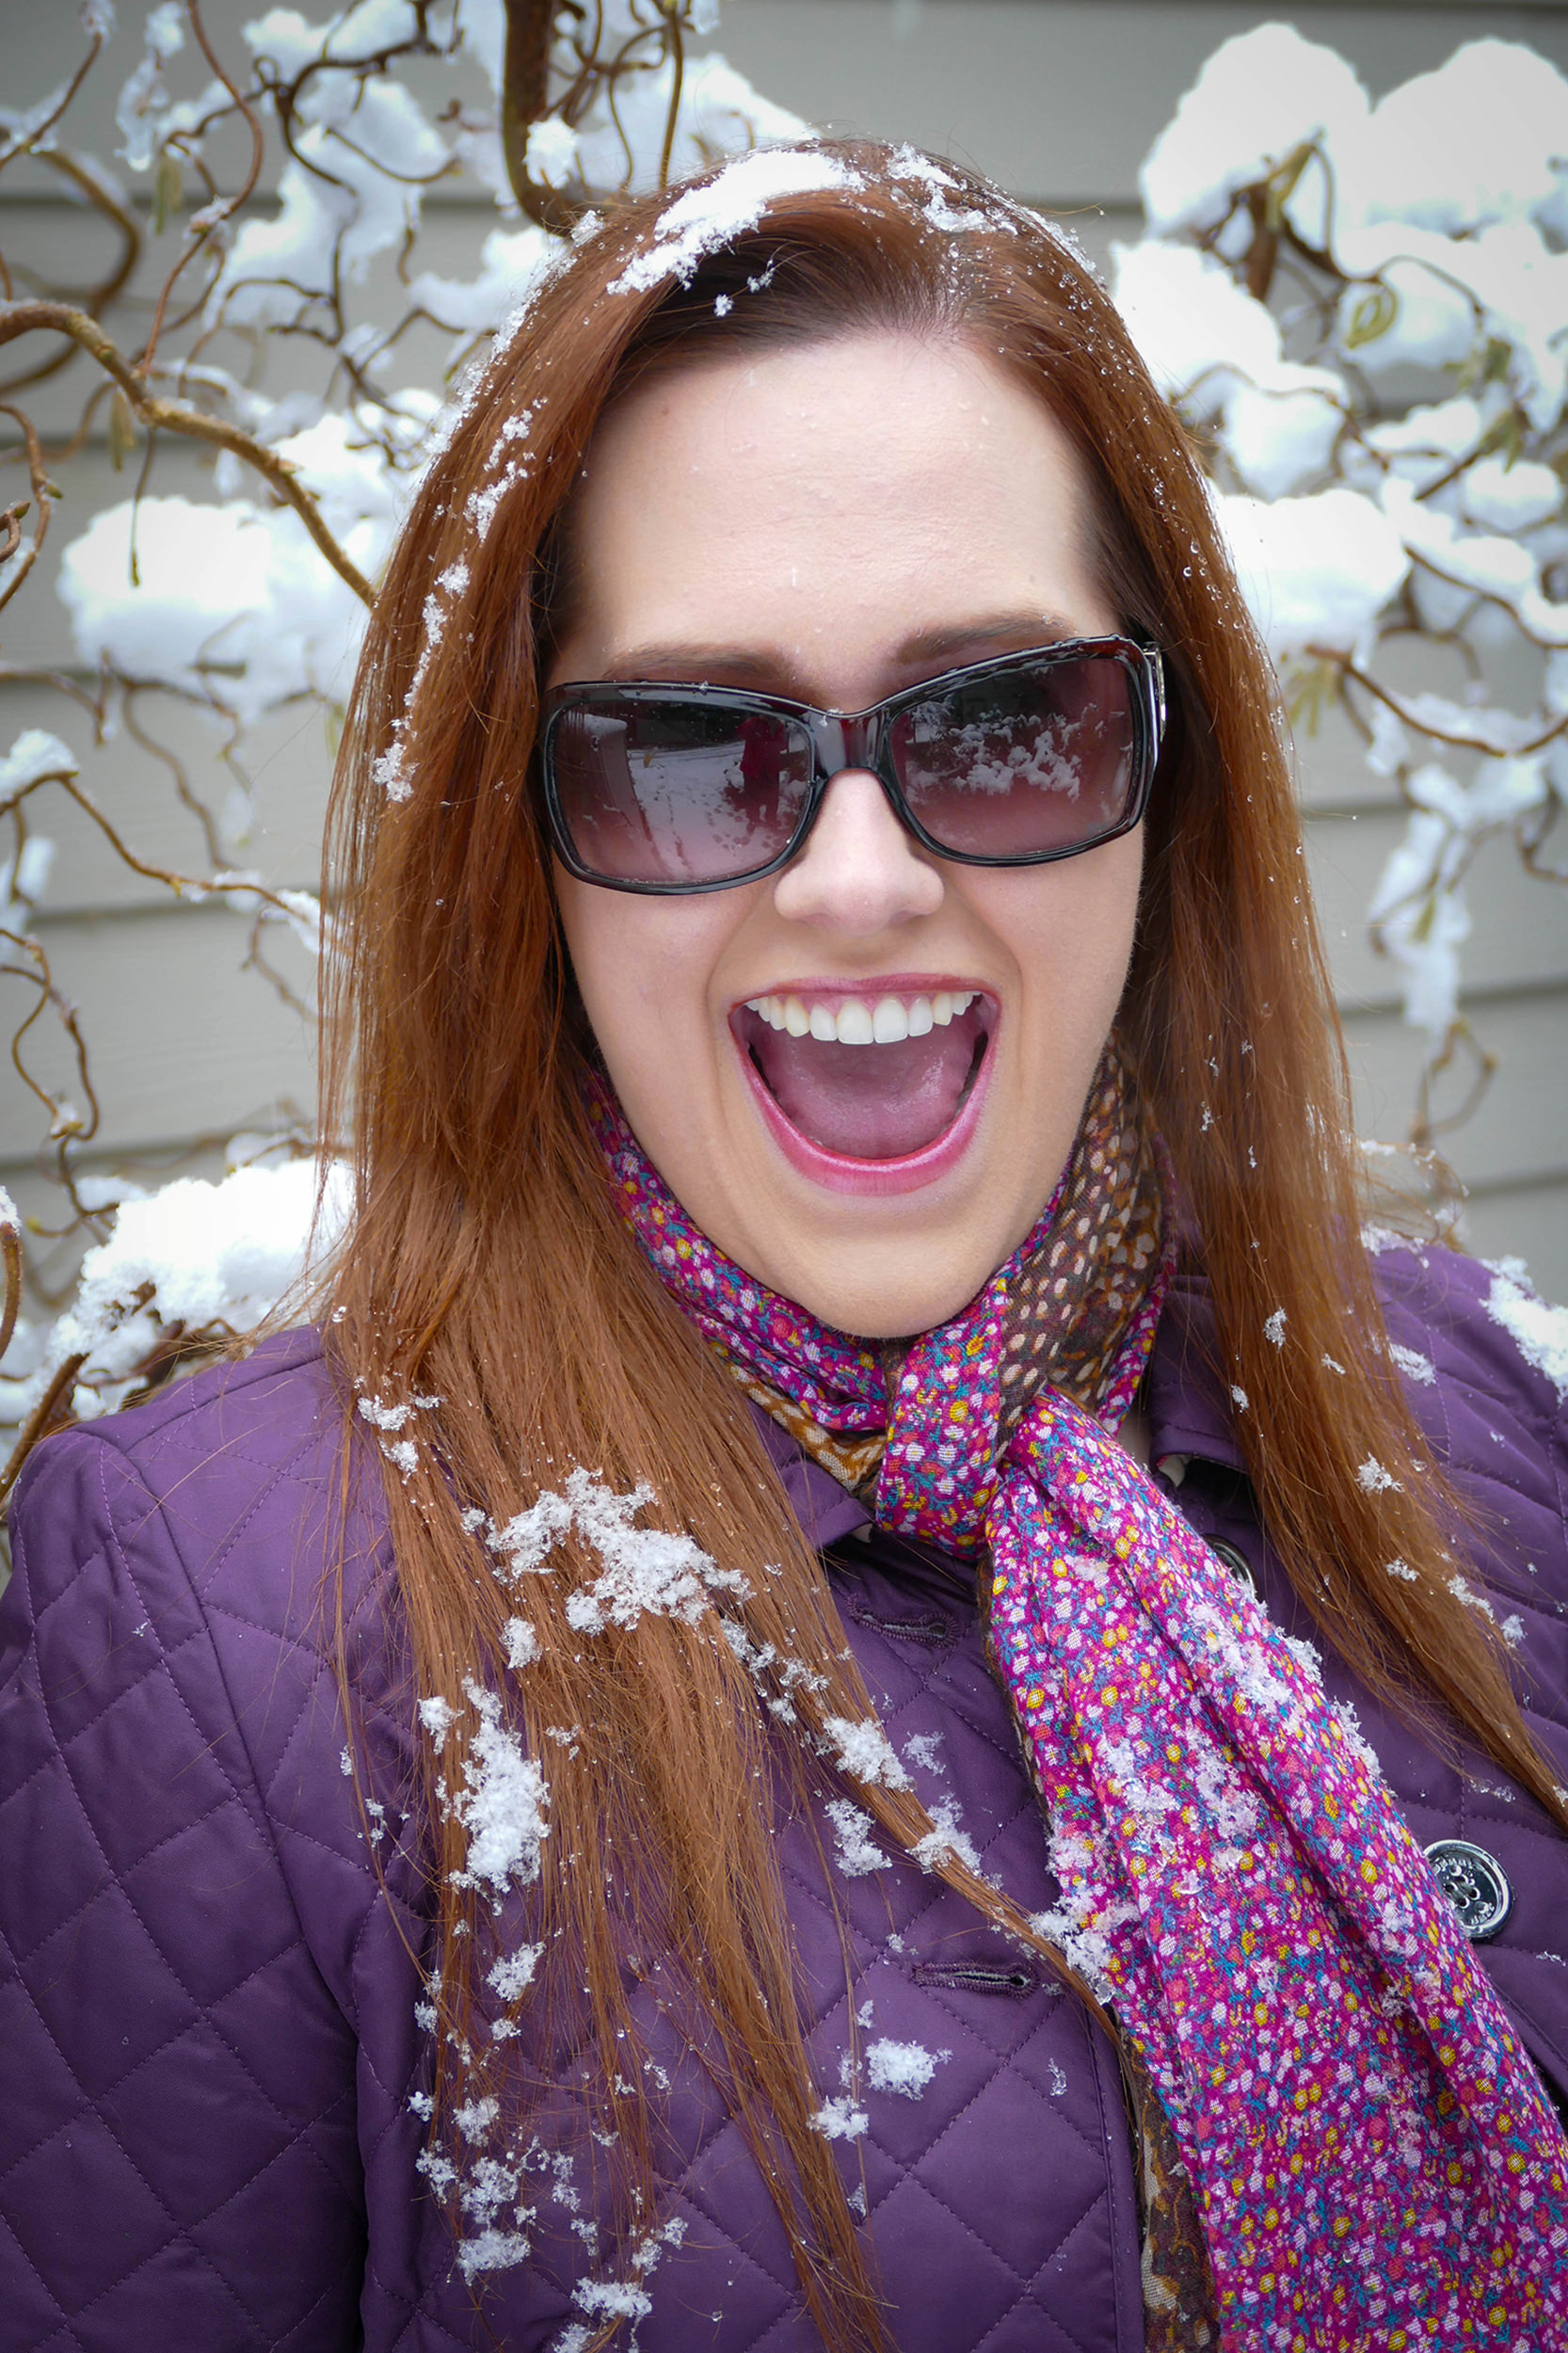 Snowing in Seattle - Katherine Chloe Cahoon C